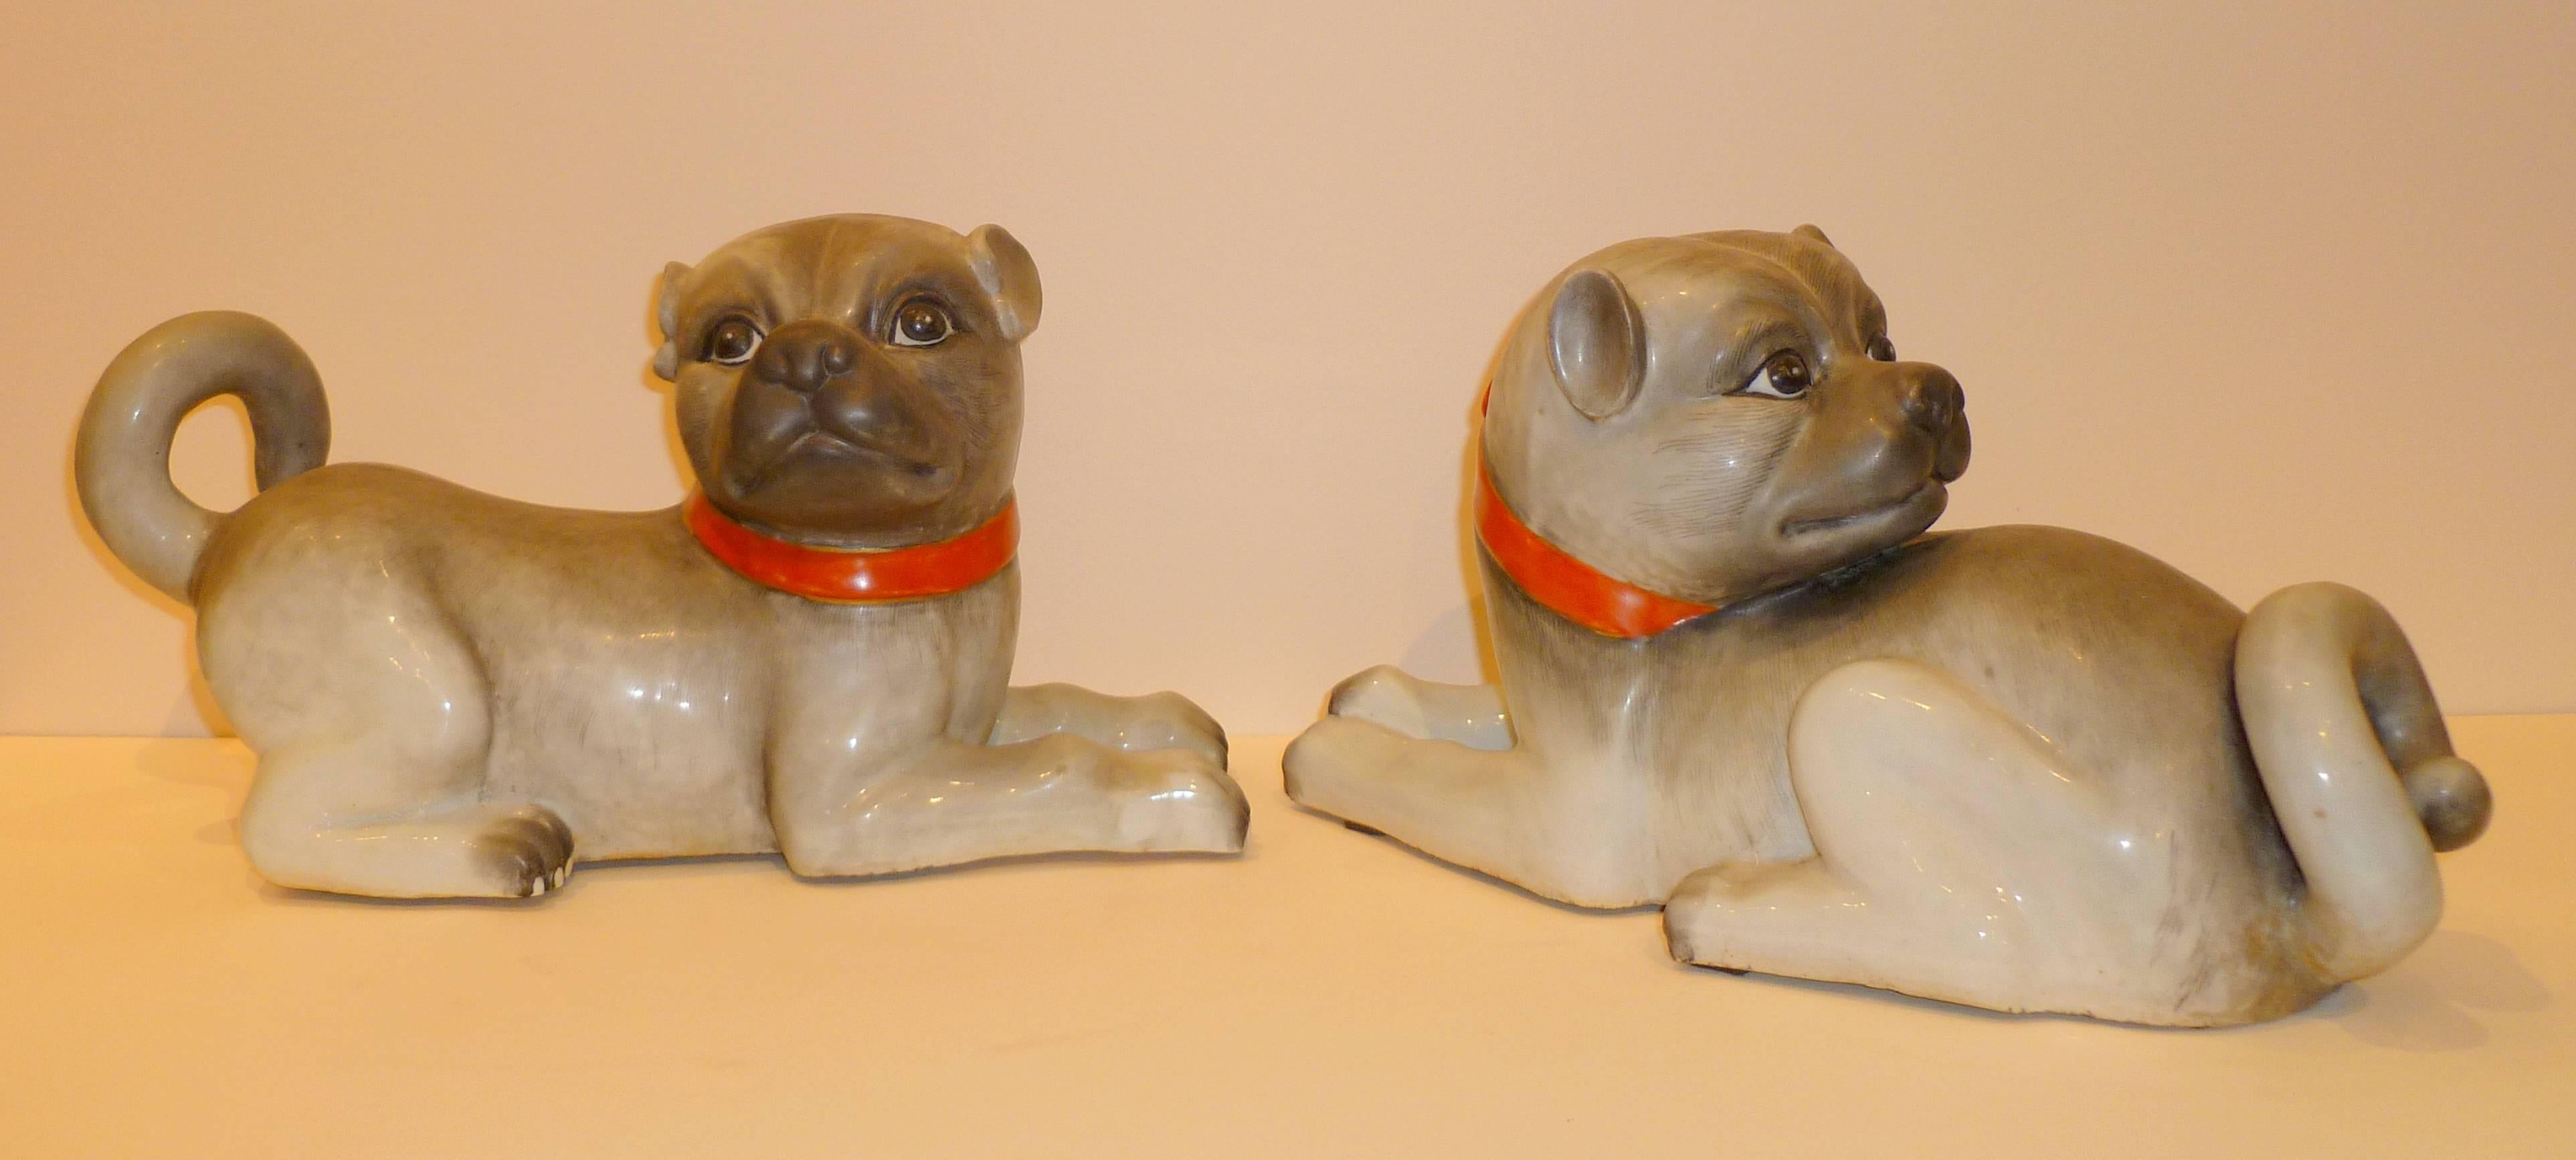 Une paire de chiens en porcelaine au modelage vivant. Beaux détails et couleurs.